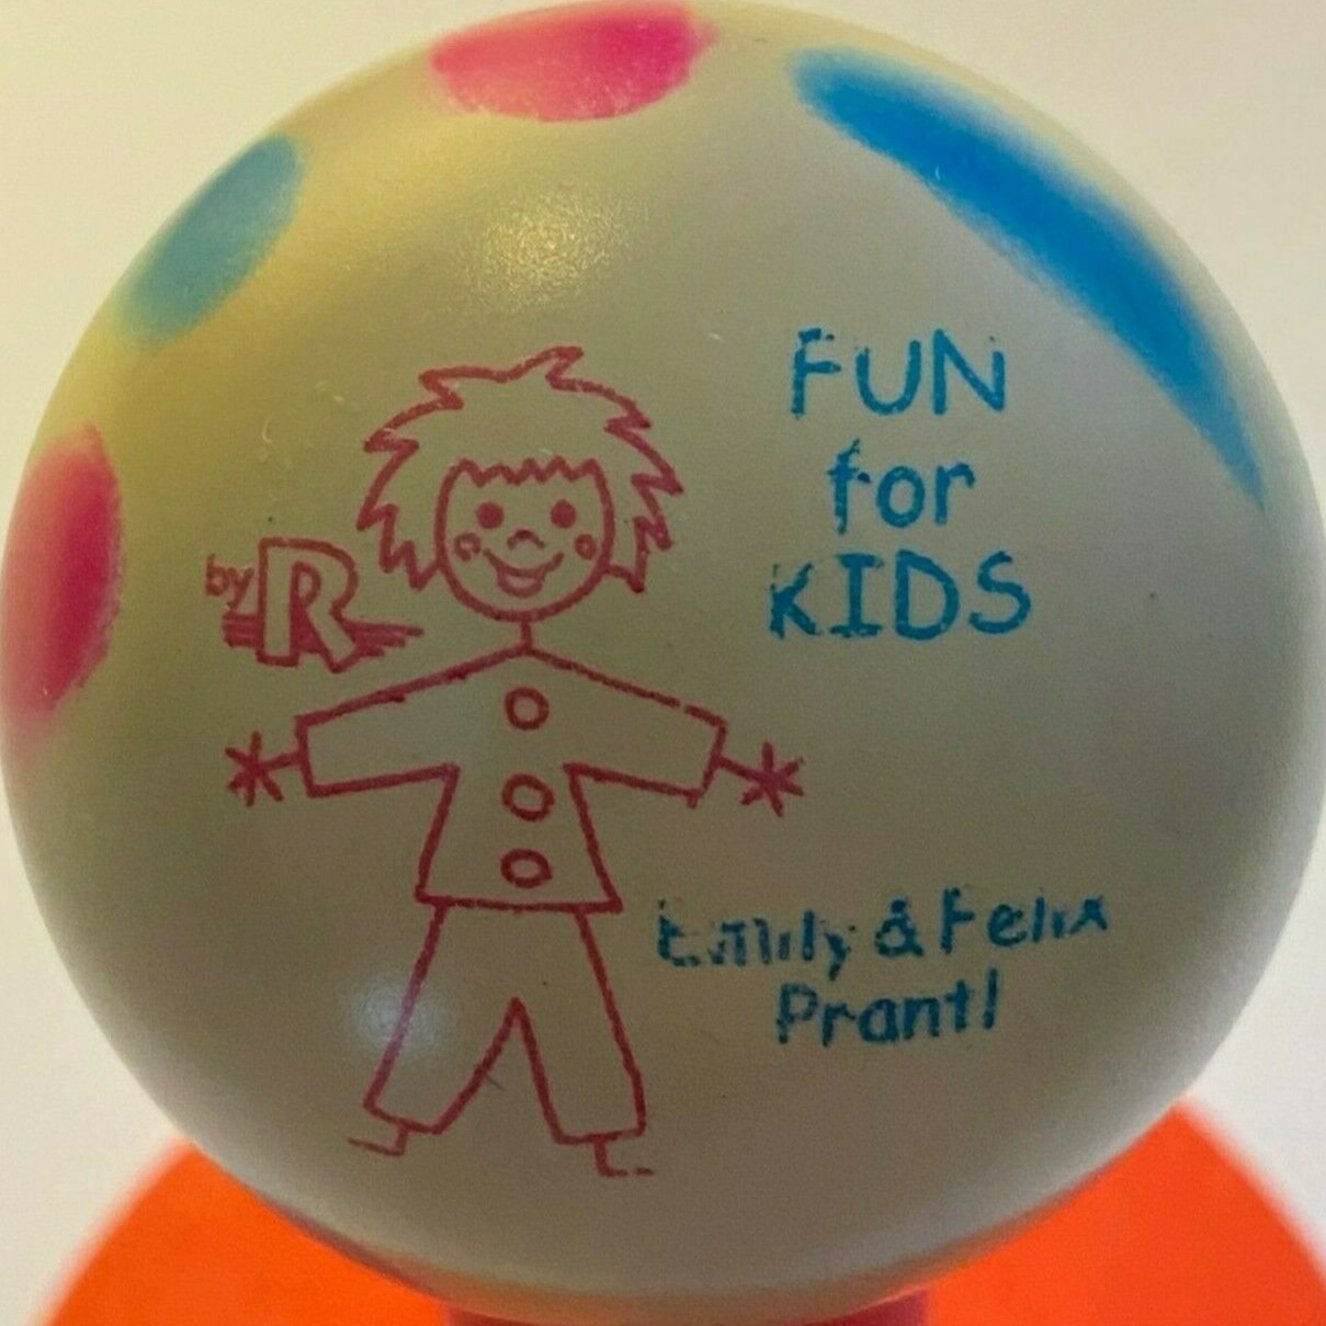 fun_for_kids_emily_&_felix_prantl.jpg